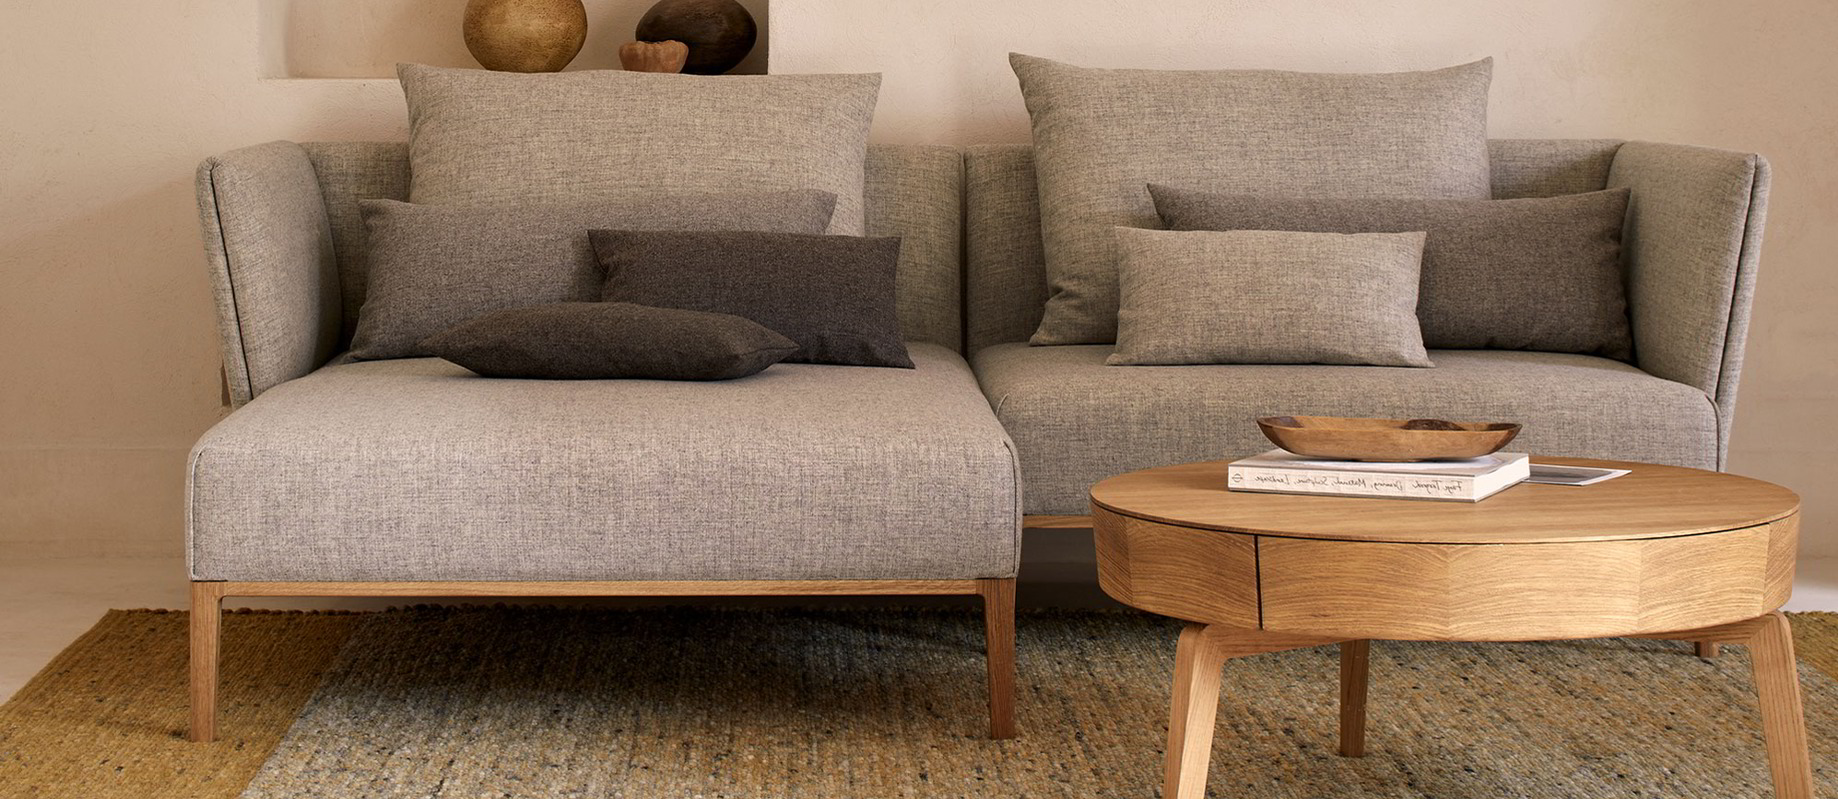 Graues Sofa steht auf einem grauen Teppich, ein Holzcouchtisch steht davor